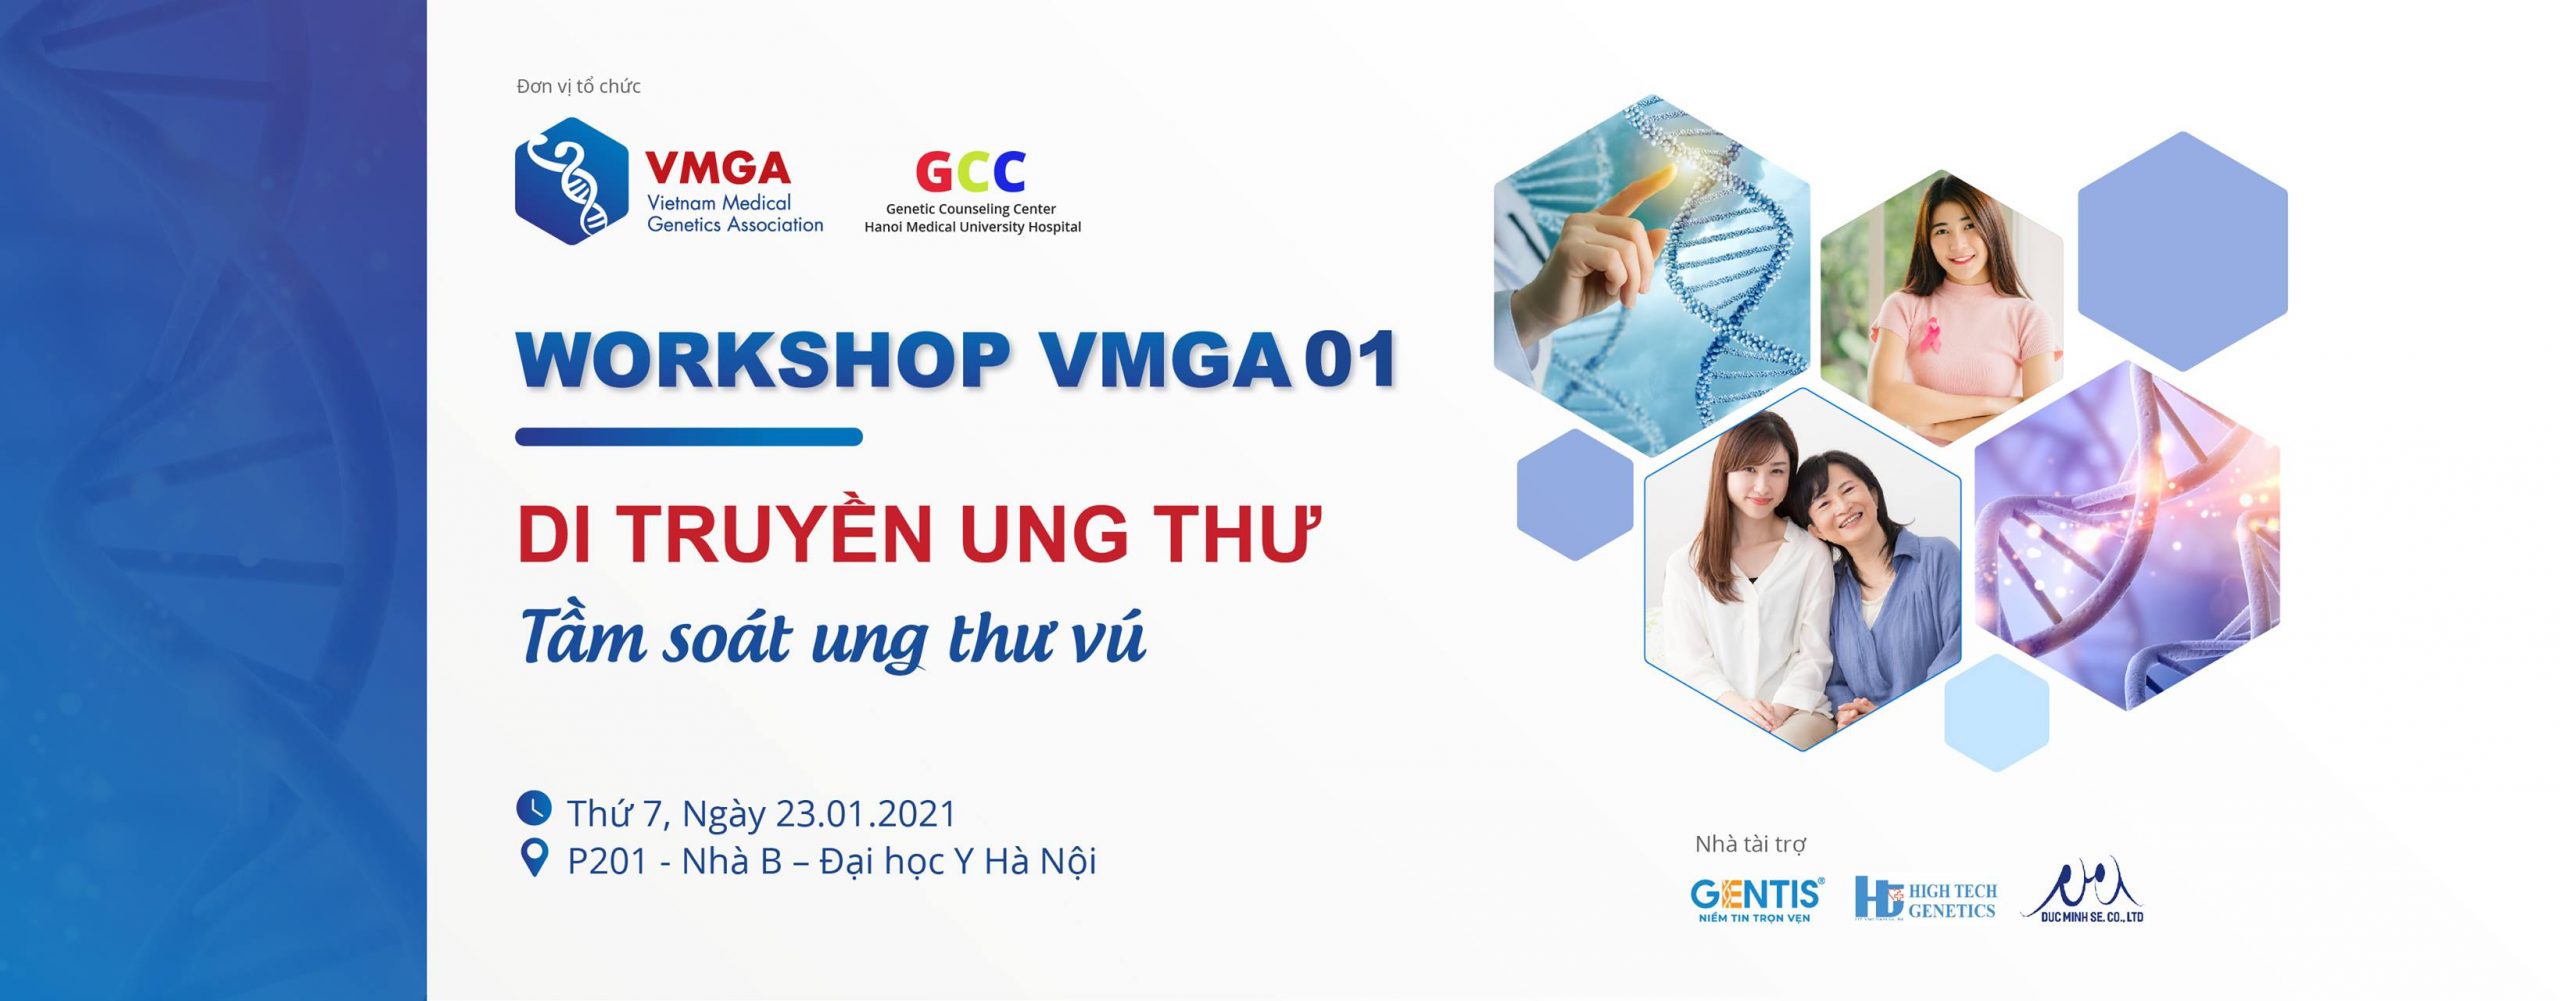 Workshop VMGA 01: Di truyền ung thư (Tầm soát ung thư vú) – Hội Di truyền Y học Việt Nam